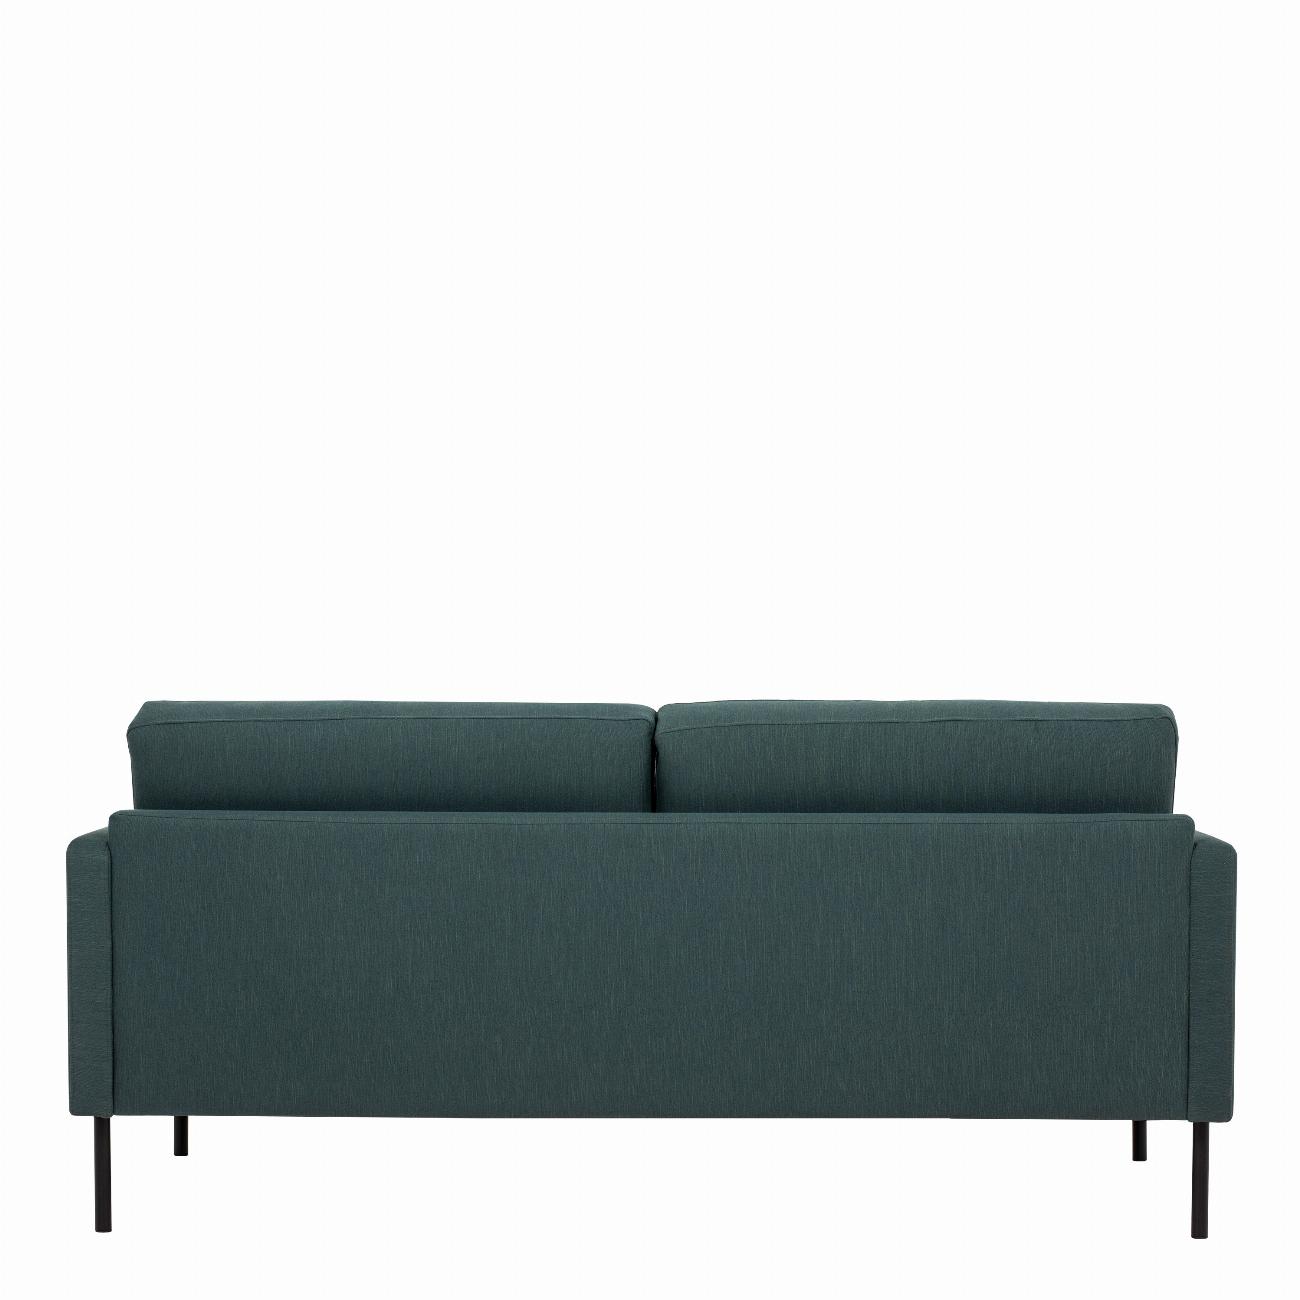 Larvik 2.5 Seater Sofa - Dark Green, Black Legs